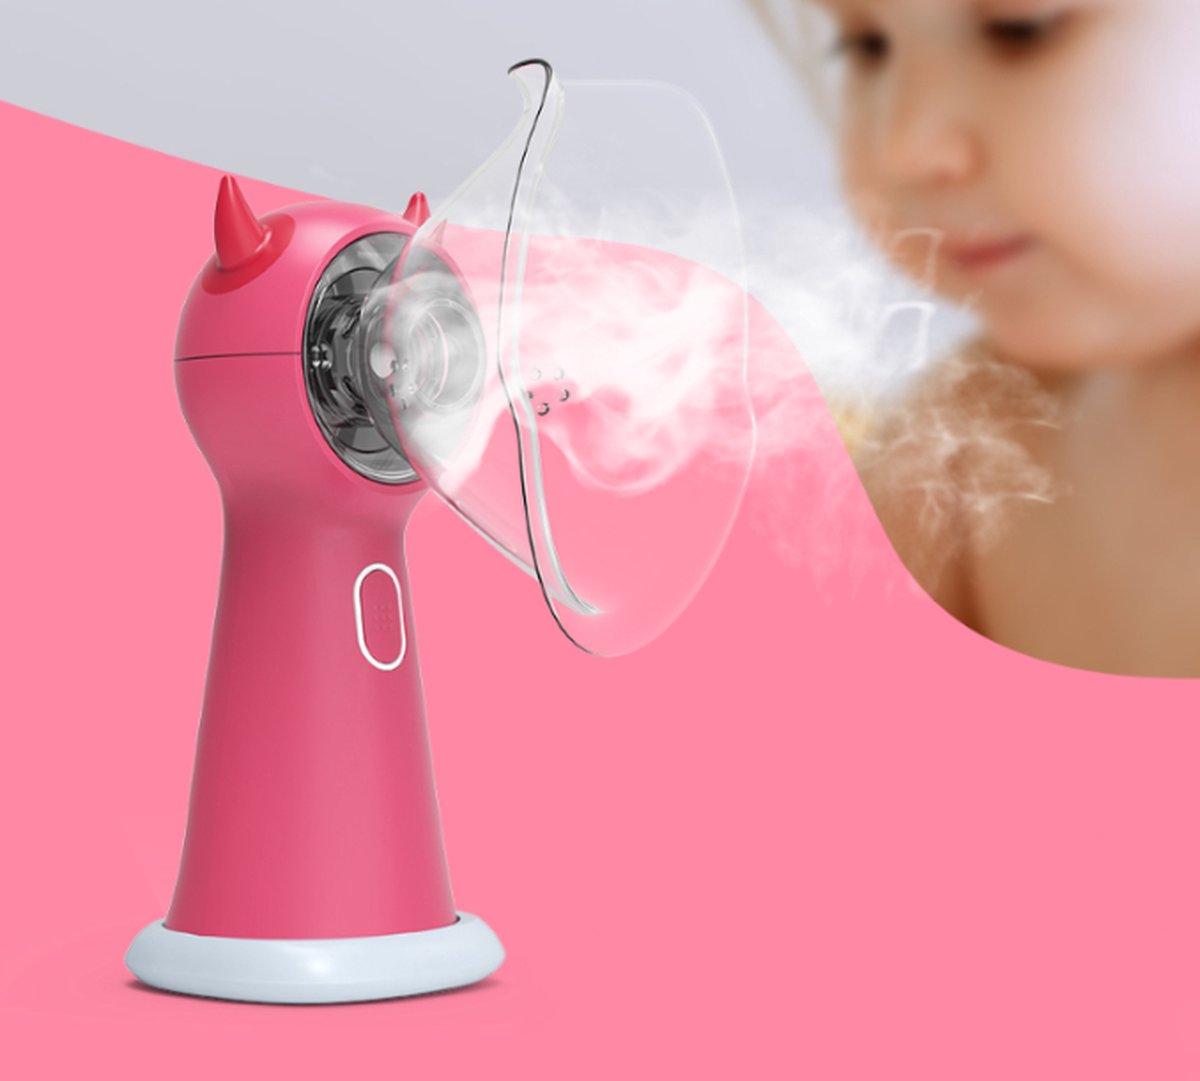 Aerosoltoestel - Kinderlijk design - Ultrasone Vernevelaar Inhalator – Inhalatieapparaat voor Kinderen, Volwassenen en Baby’s – Helpt tegen Luchtwegaandoeningen - Incl. 2 mondstukken